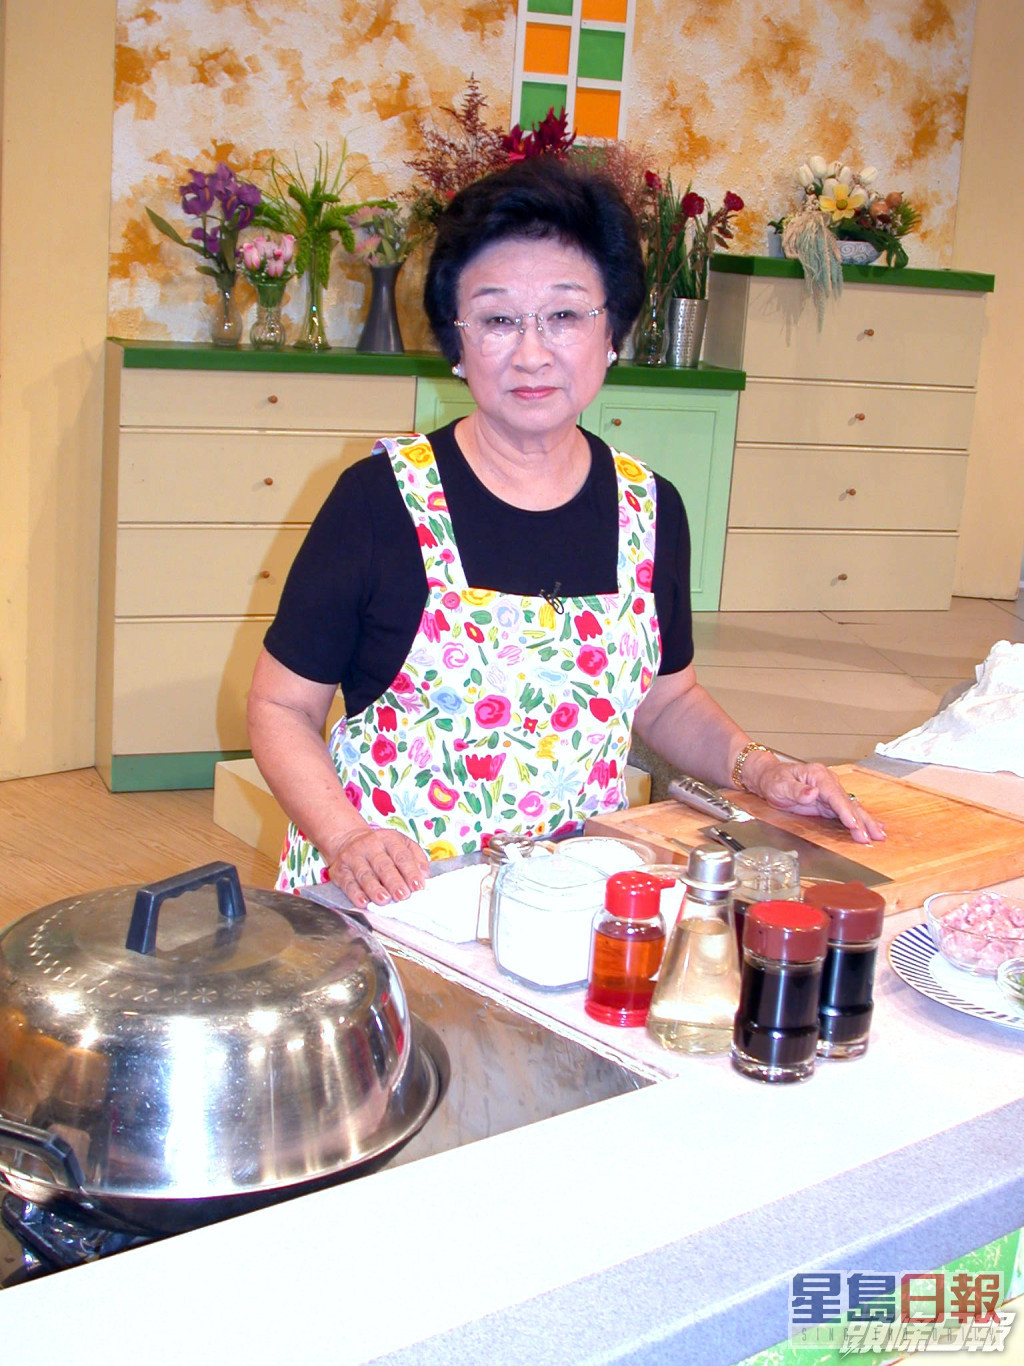 方太是著名烹飪主持。